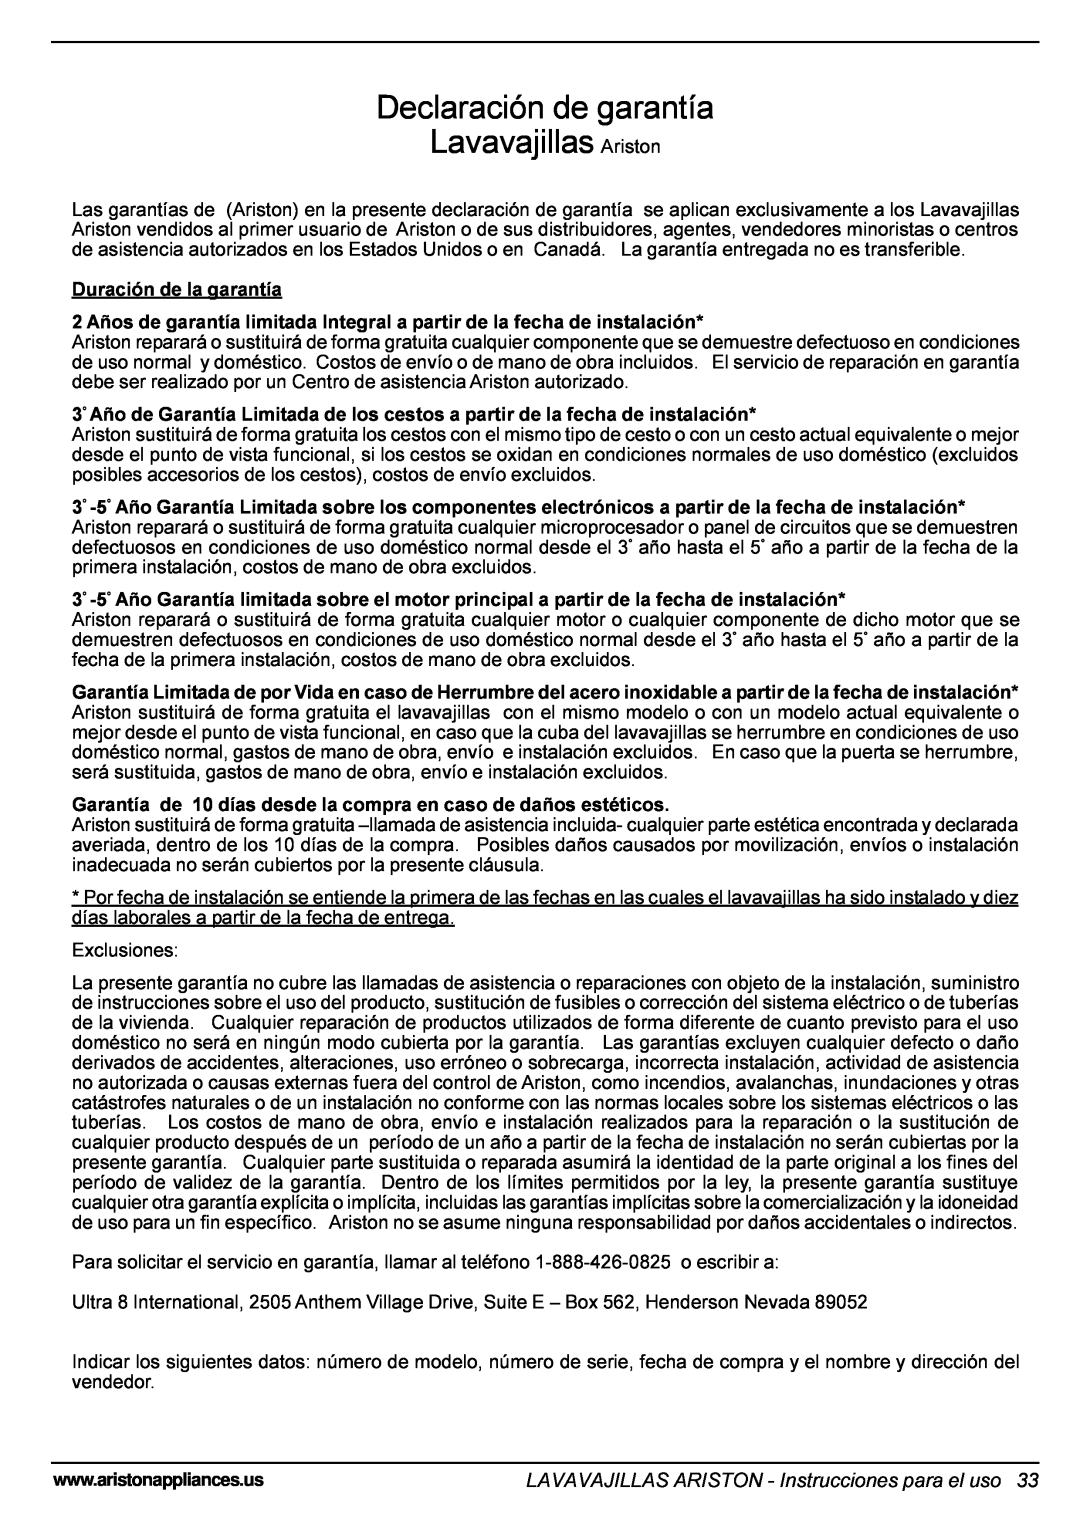 Ariston LI 640 I-B-S-W Declaración de garantía Lavavajillas Ariston, LAVAVAJILLAS ARISTON - Instrucciones para el uso 